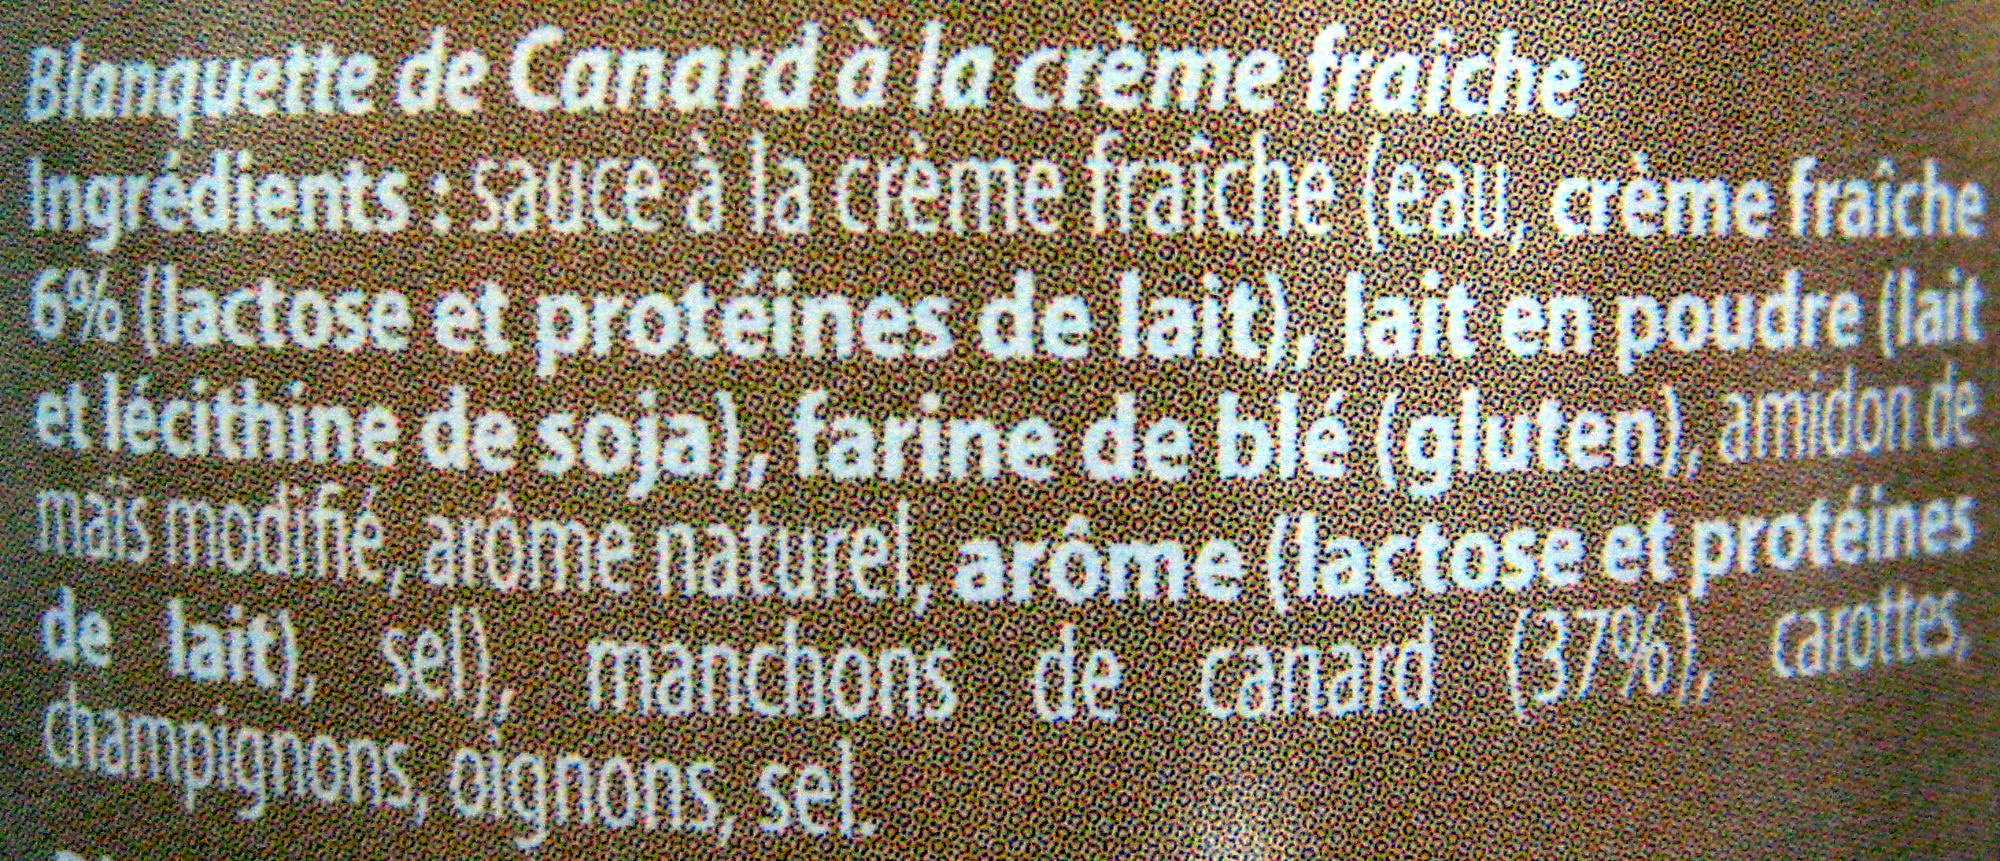 Blanquette de Canard à la Crème Fraîche - Ingredients - fr